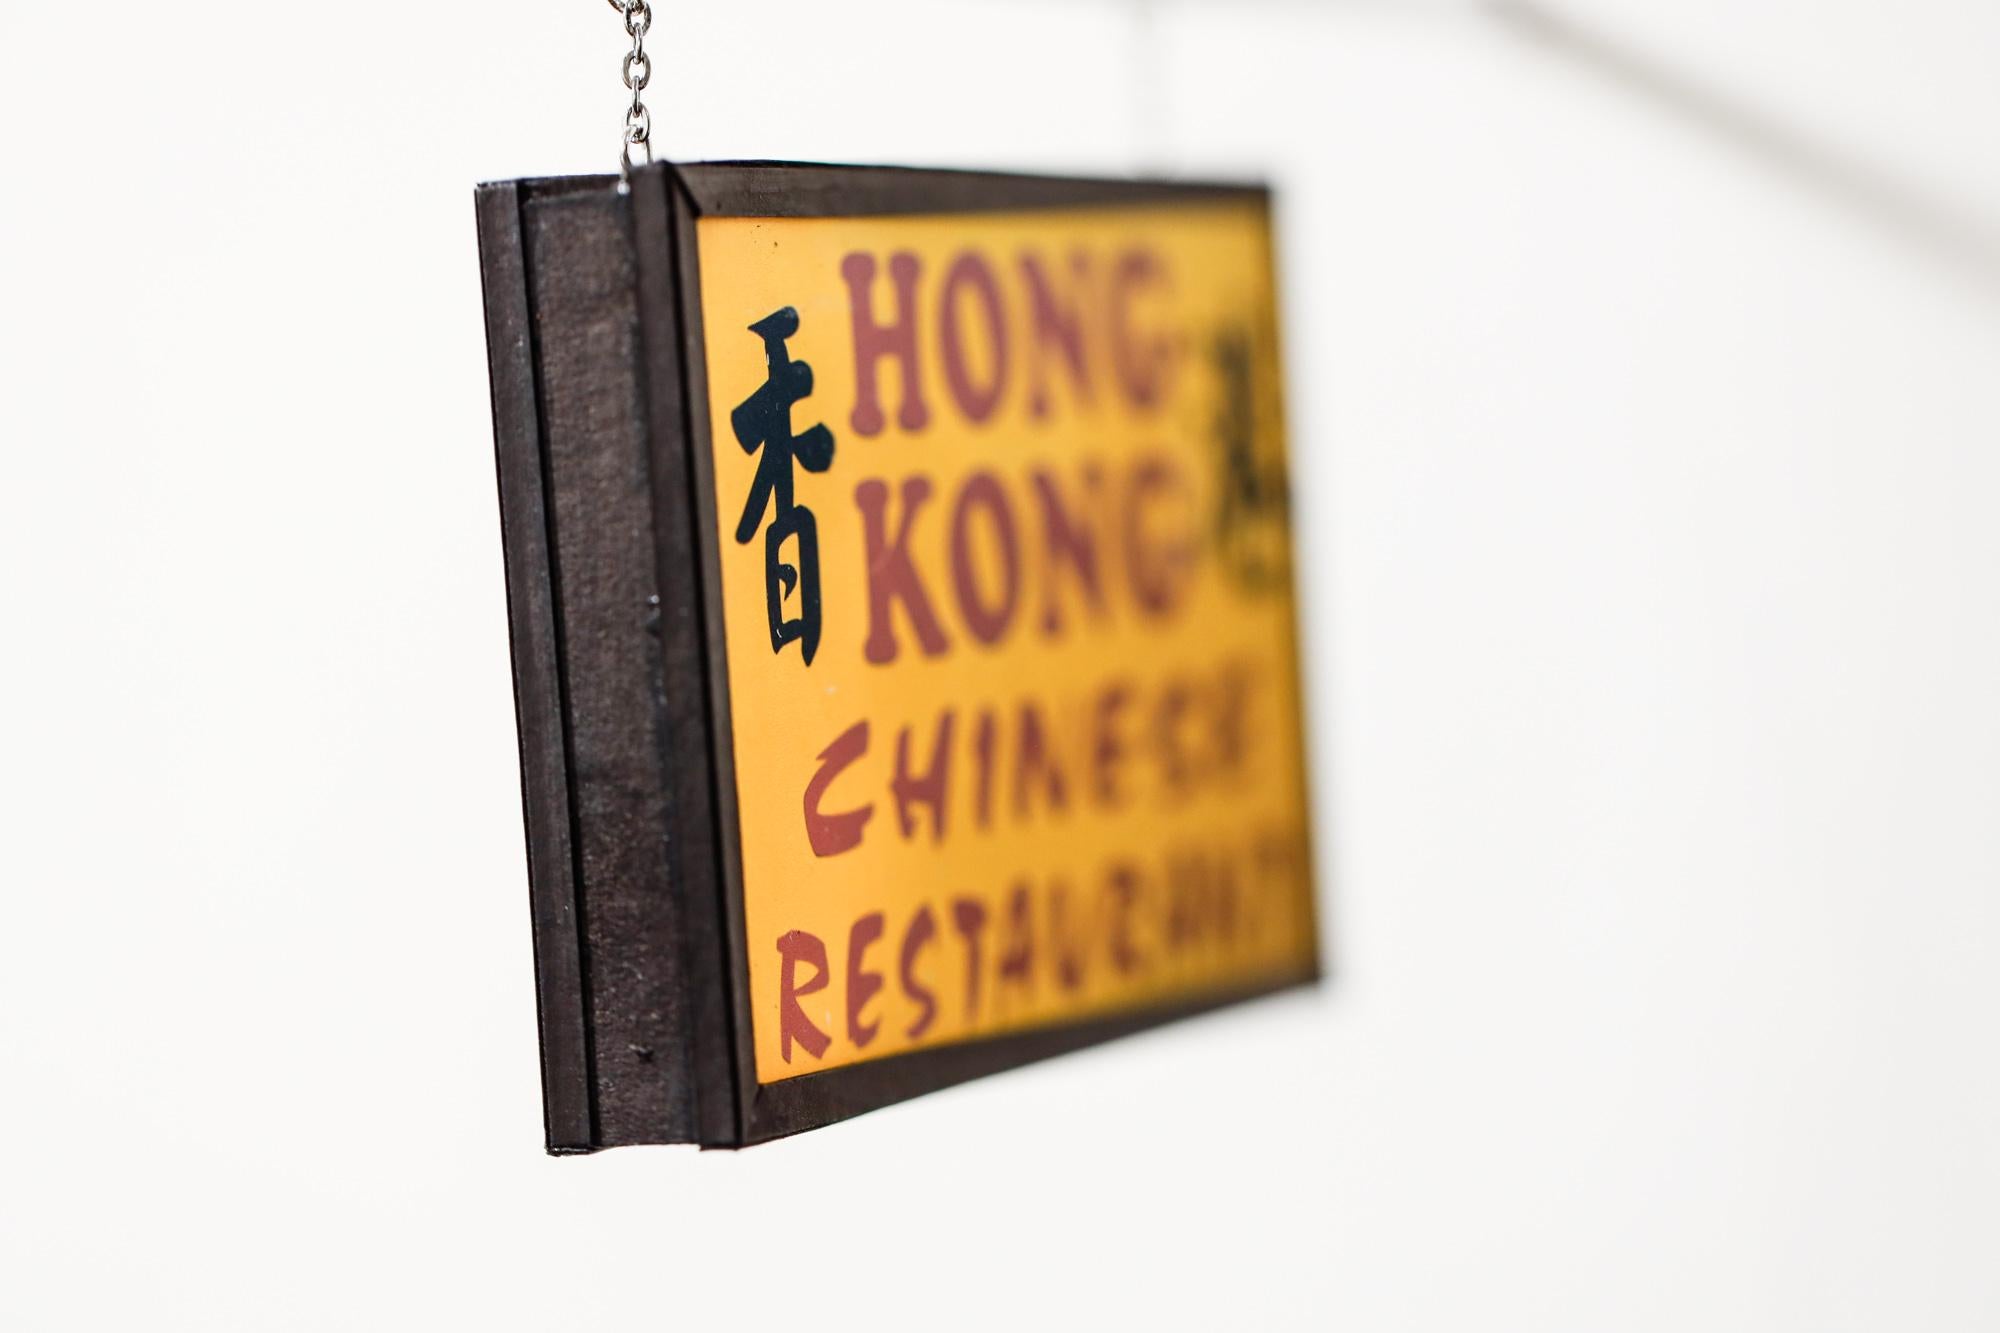 Hong Kong Chinese - Gray Still-Life Sculpture by Drew Leshko